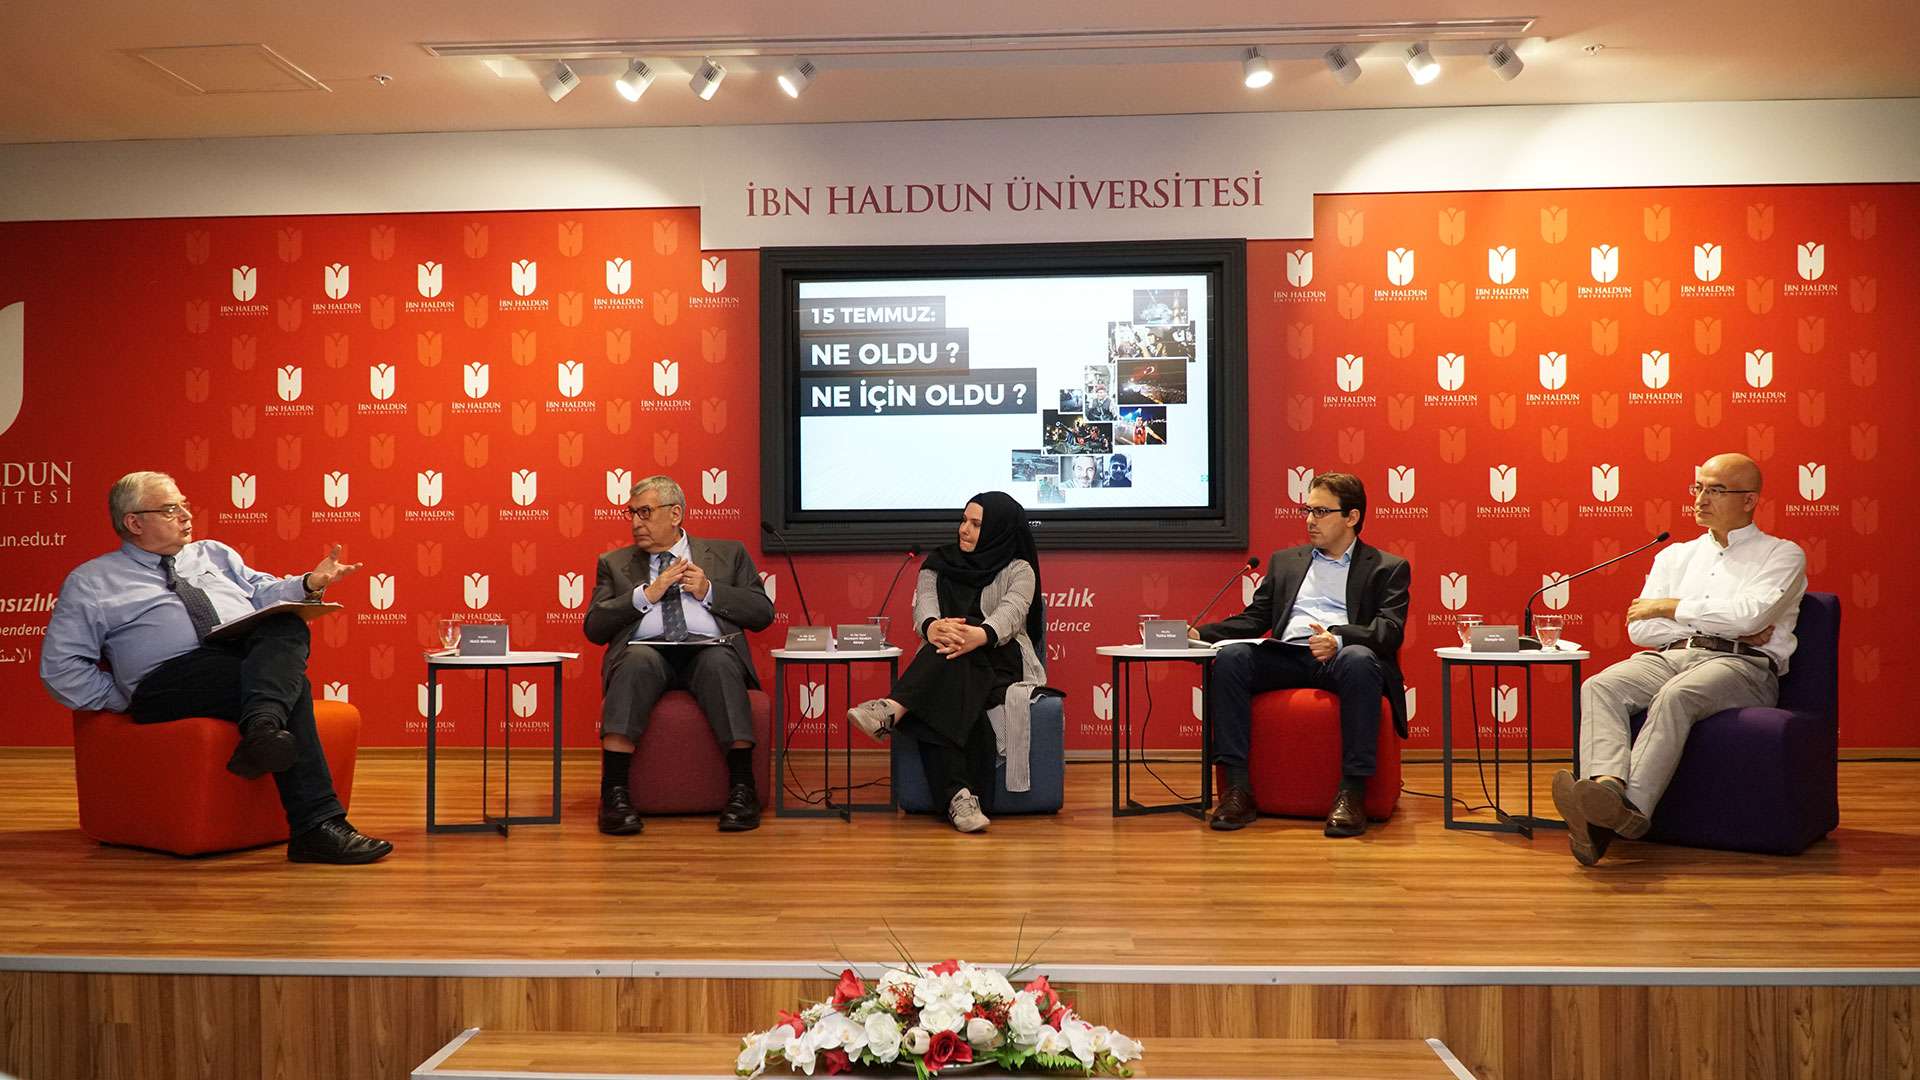 İbn Haldun Üniversitesinde 15 Temmuz Paneli Düzenlendi